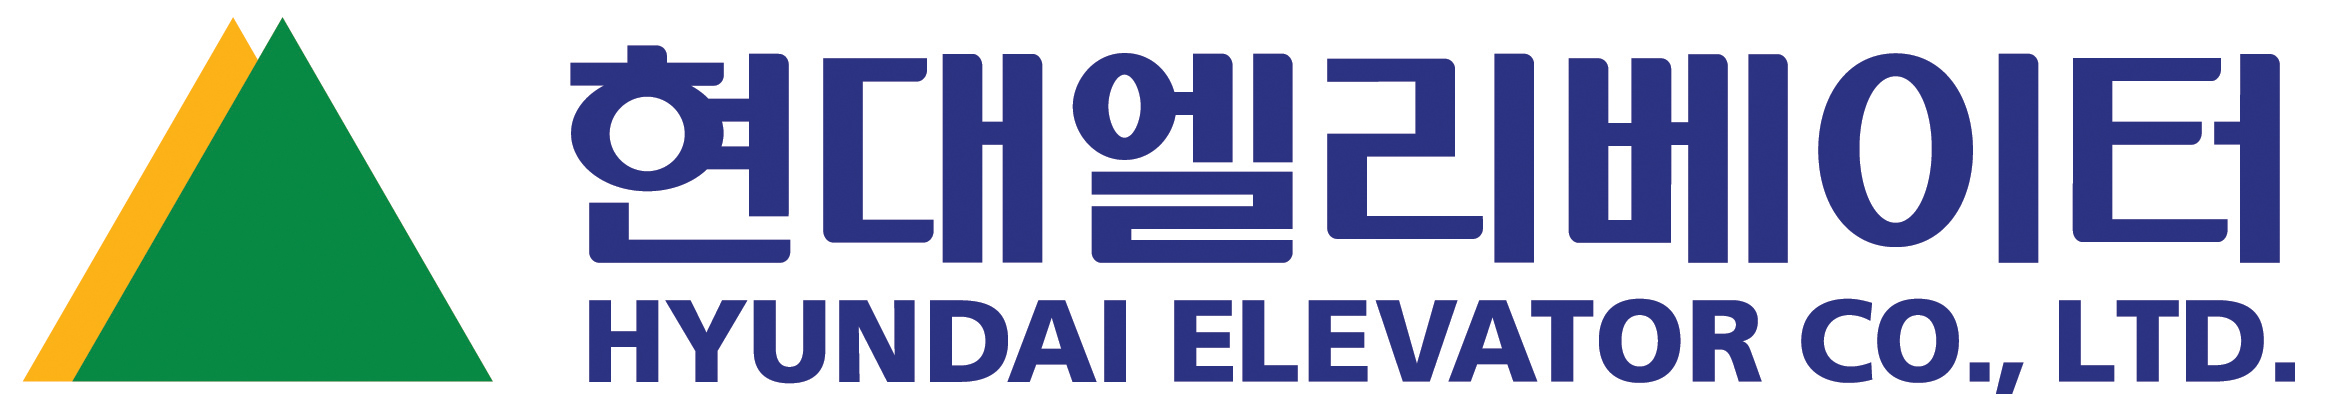 HyundaiElevator_logo.jpg